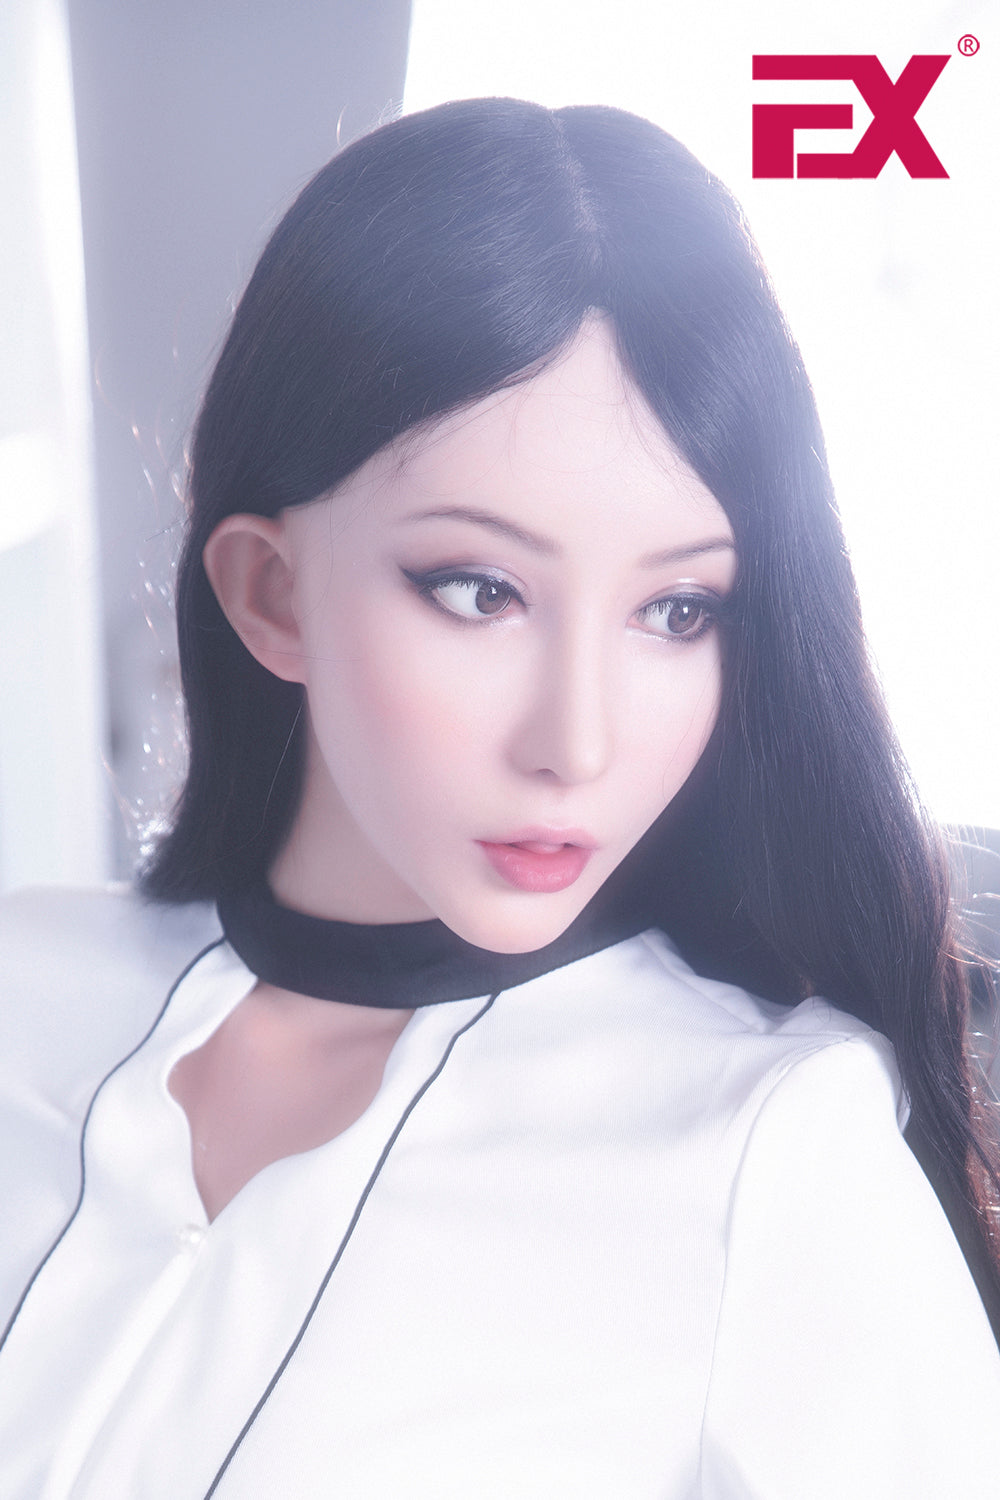 EX Doll Clone Series 168 cm Silicone - En Hee | Sex Dolls SG